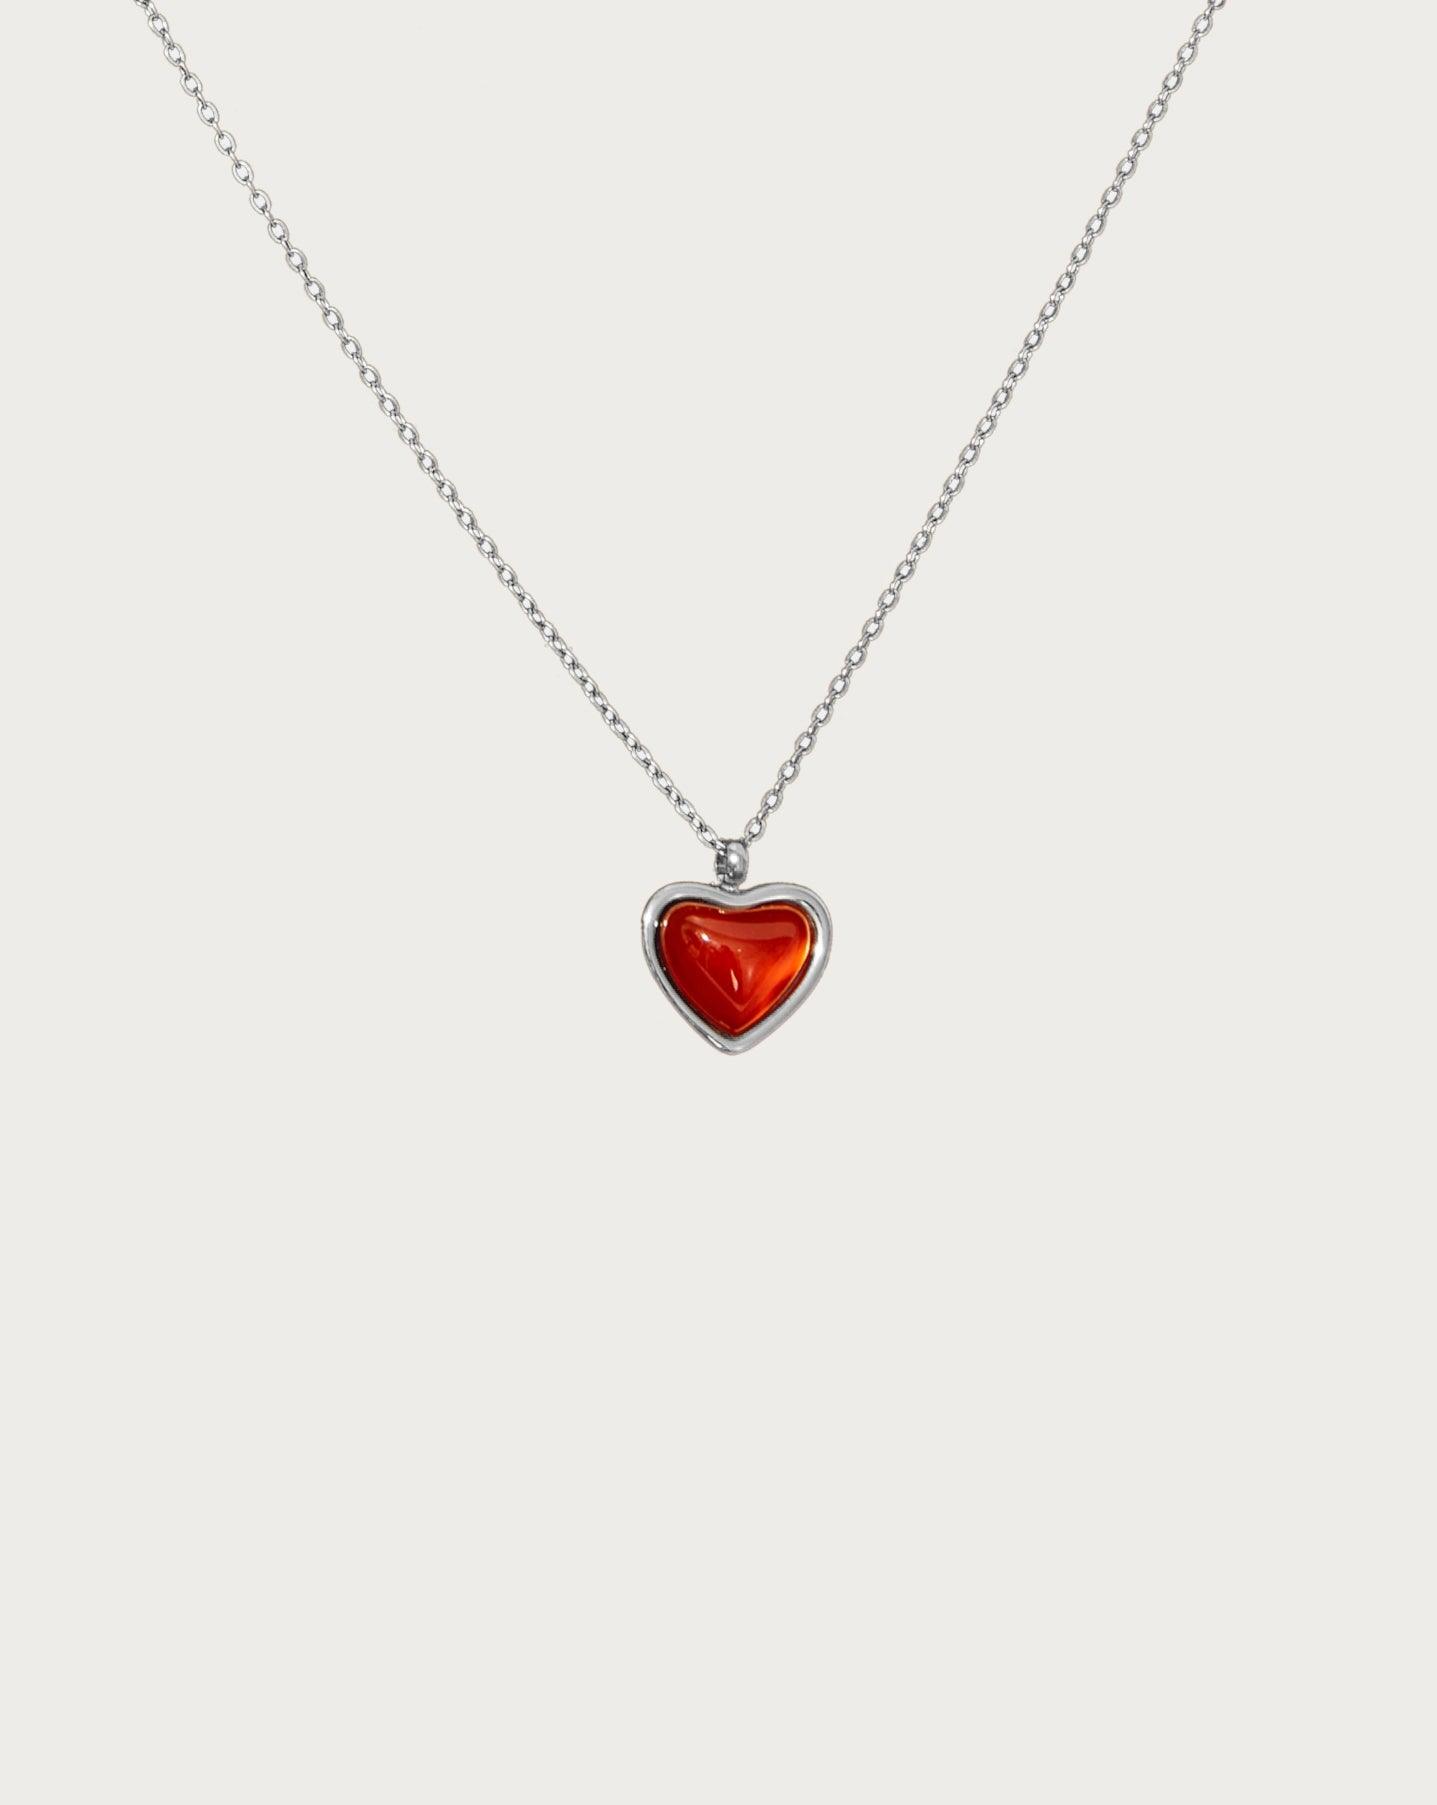 Carnelian Stone Heart Necklace - En Route Jewelry